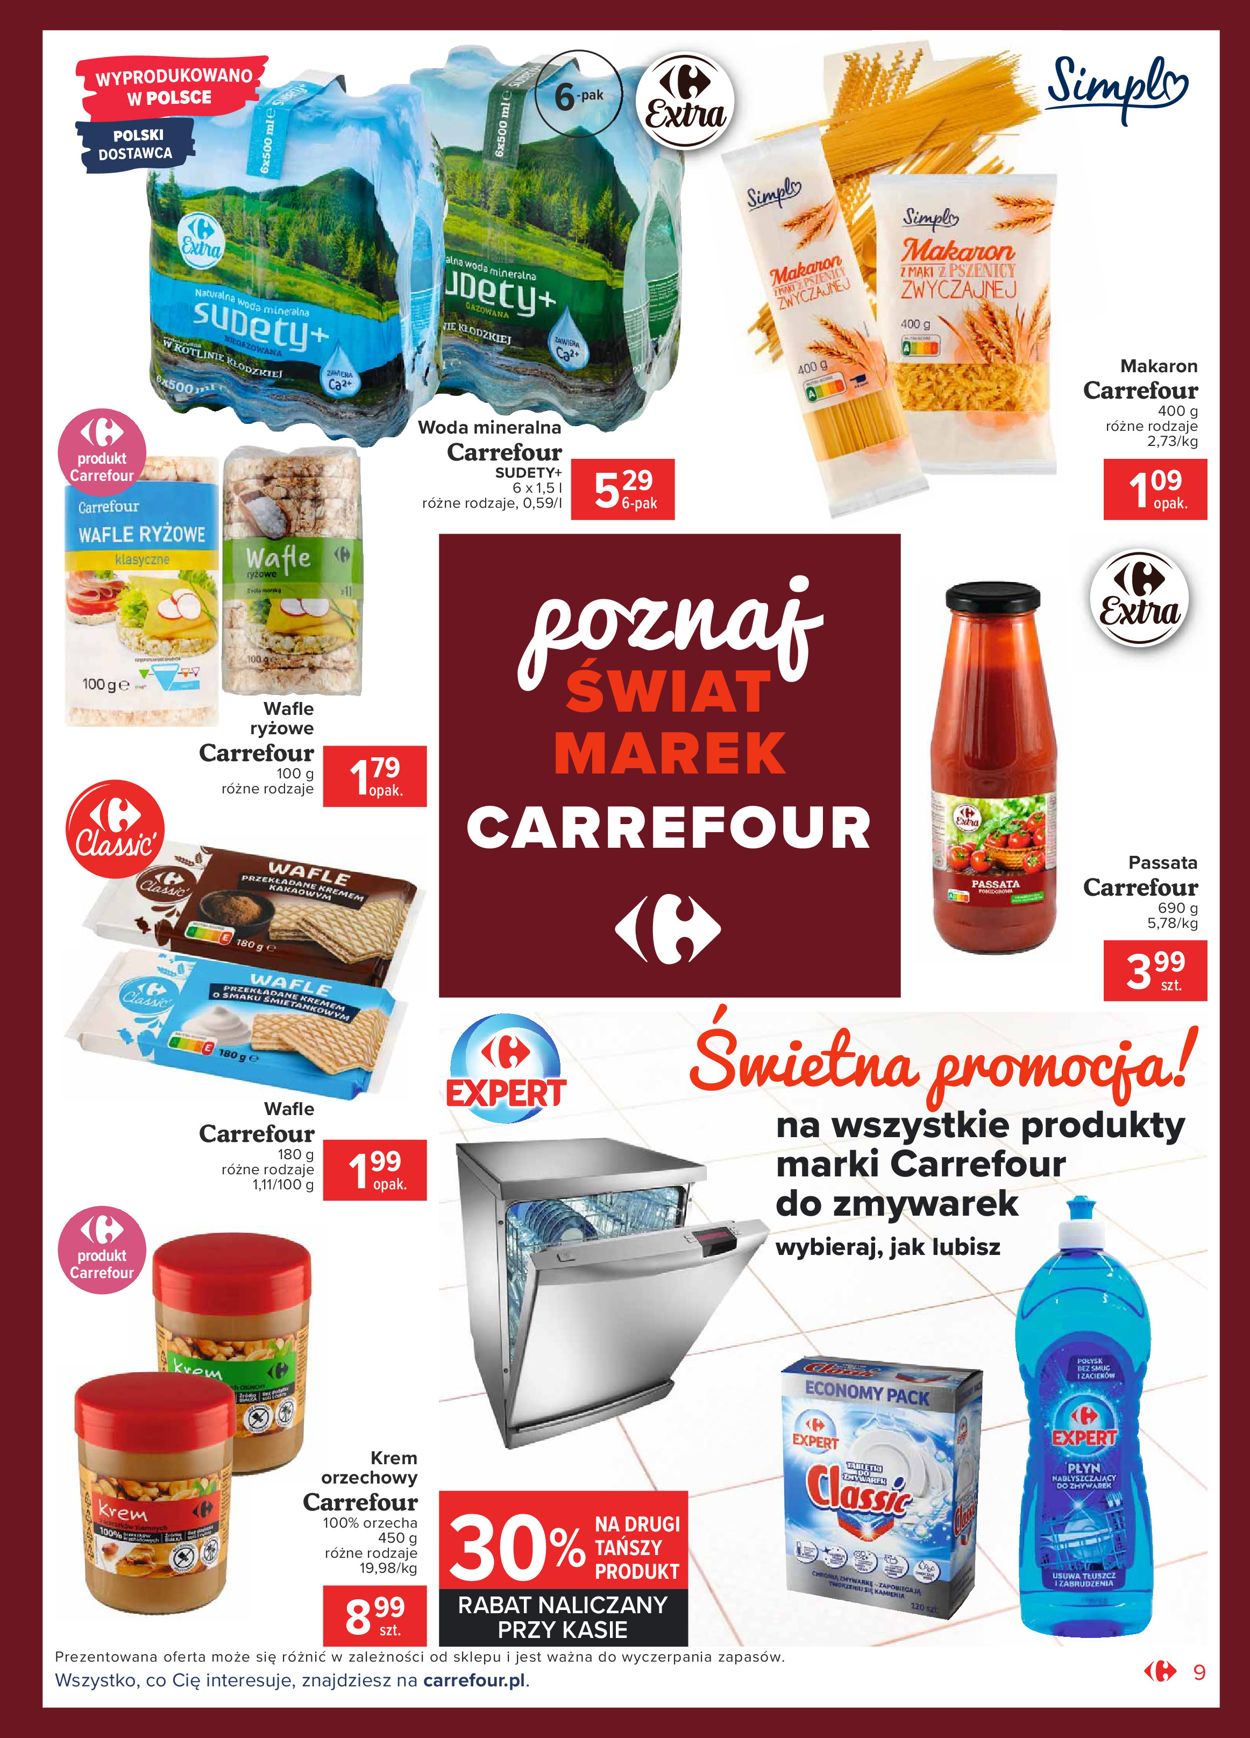 Carrefour Gazetka od 07.01.2021